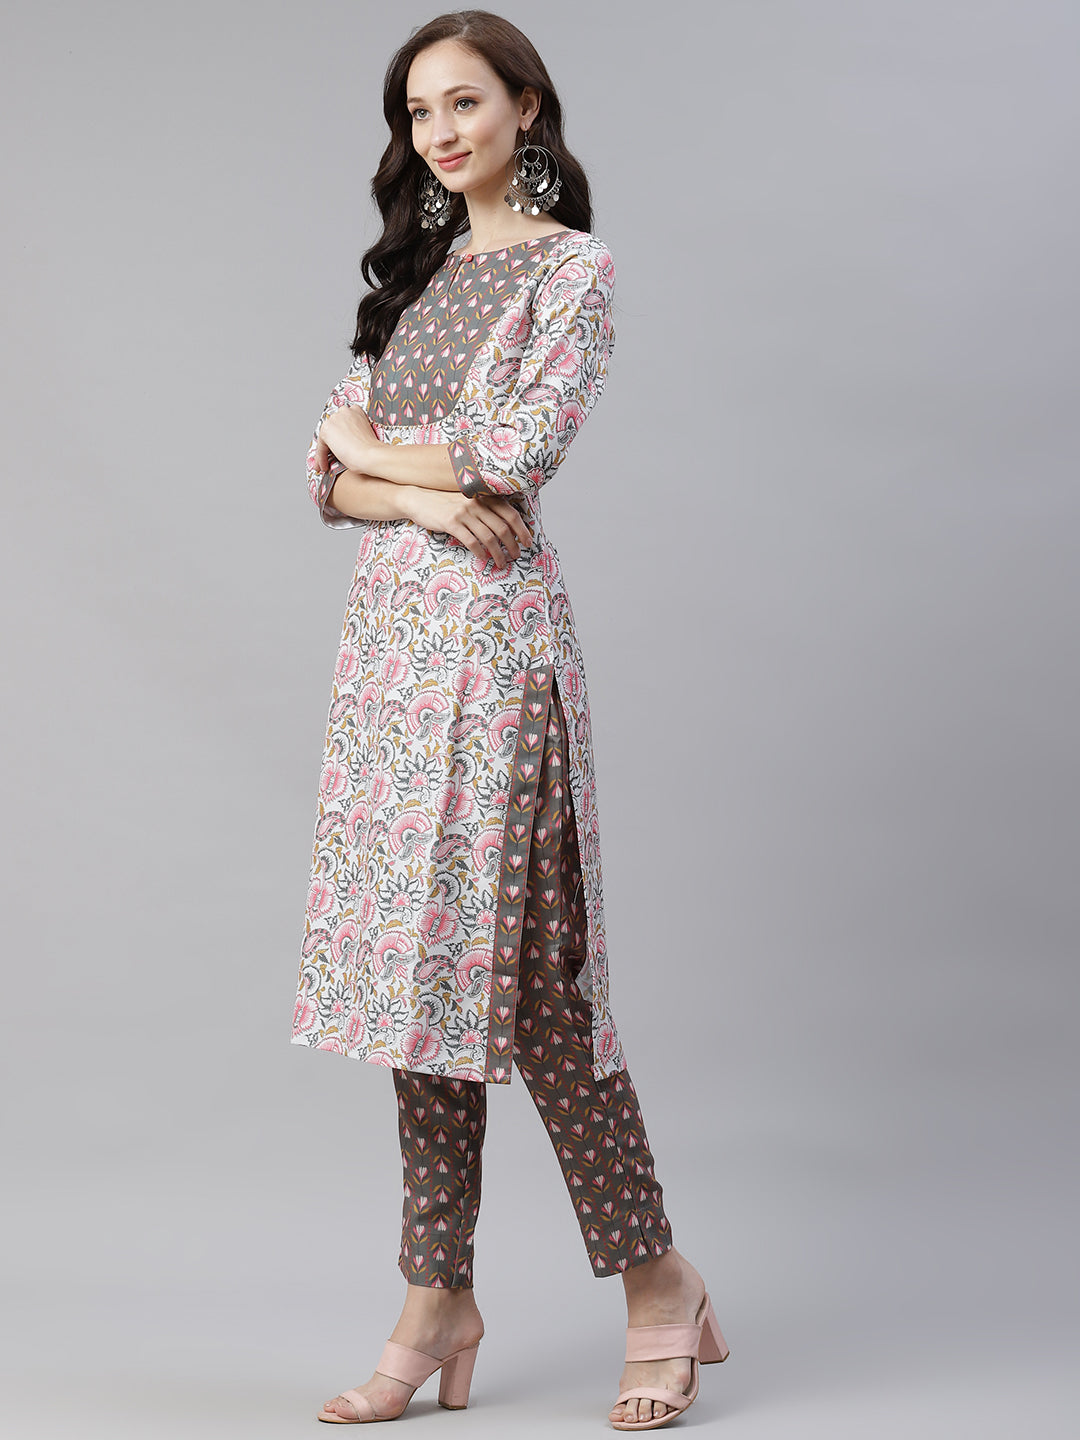 Women's Multi Colour Printed Kurta And Pants by Ziyaa- (2pcs set)